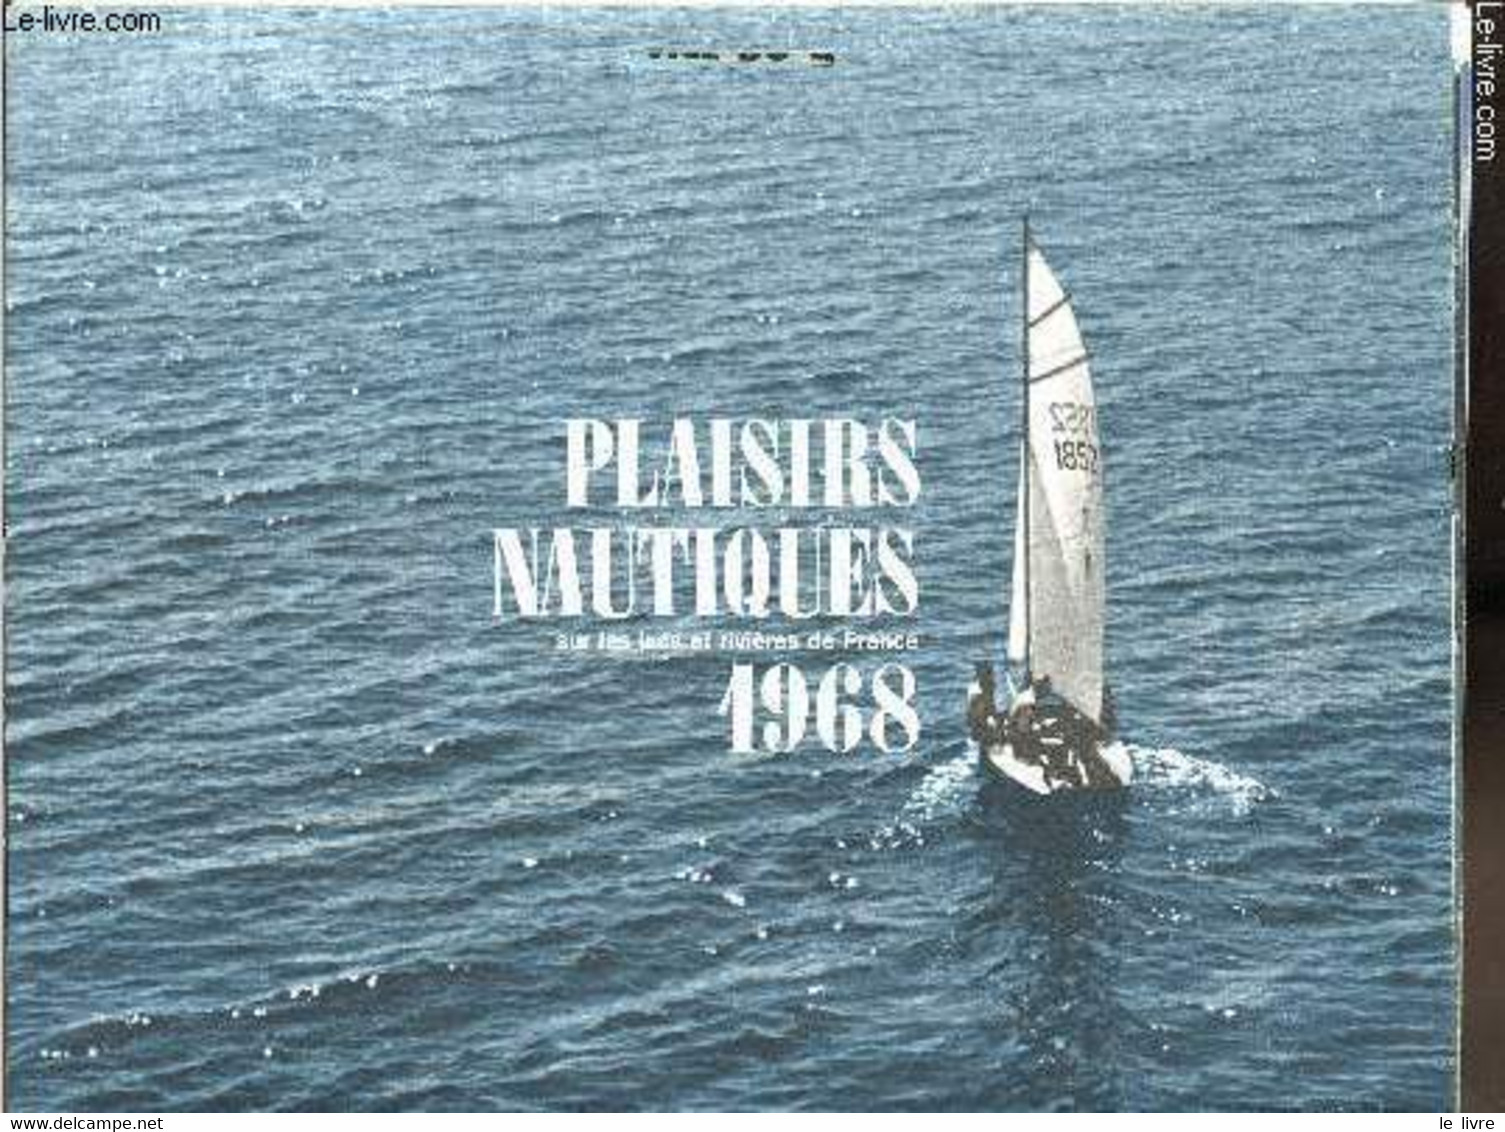 Calendriers Esso Service Du Libournais - 1968 - Plaisirs Nautiques Sur Les Lacs Et Rivières De France - - Esso Service D - Agendas & Calendarios